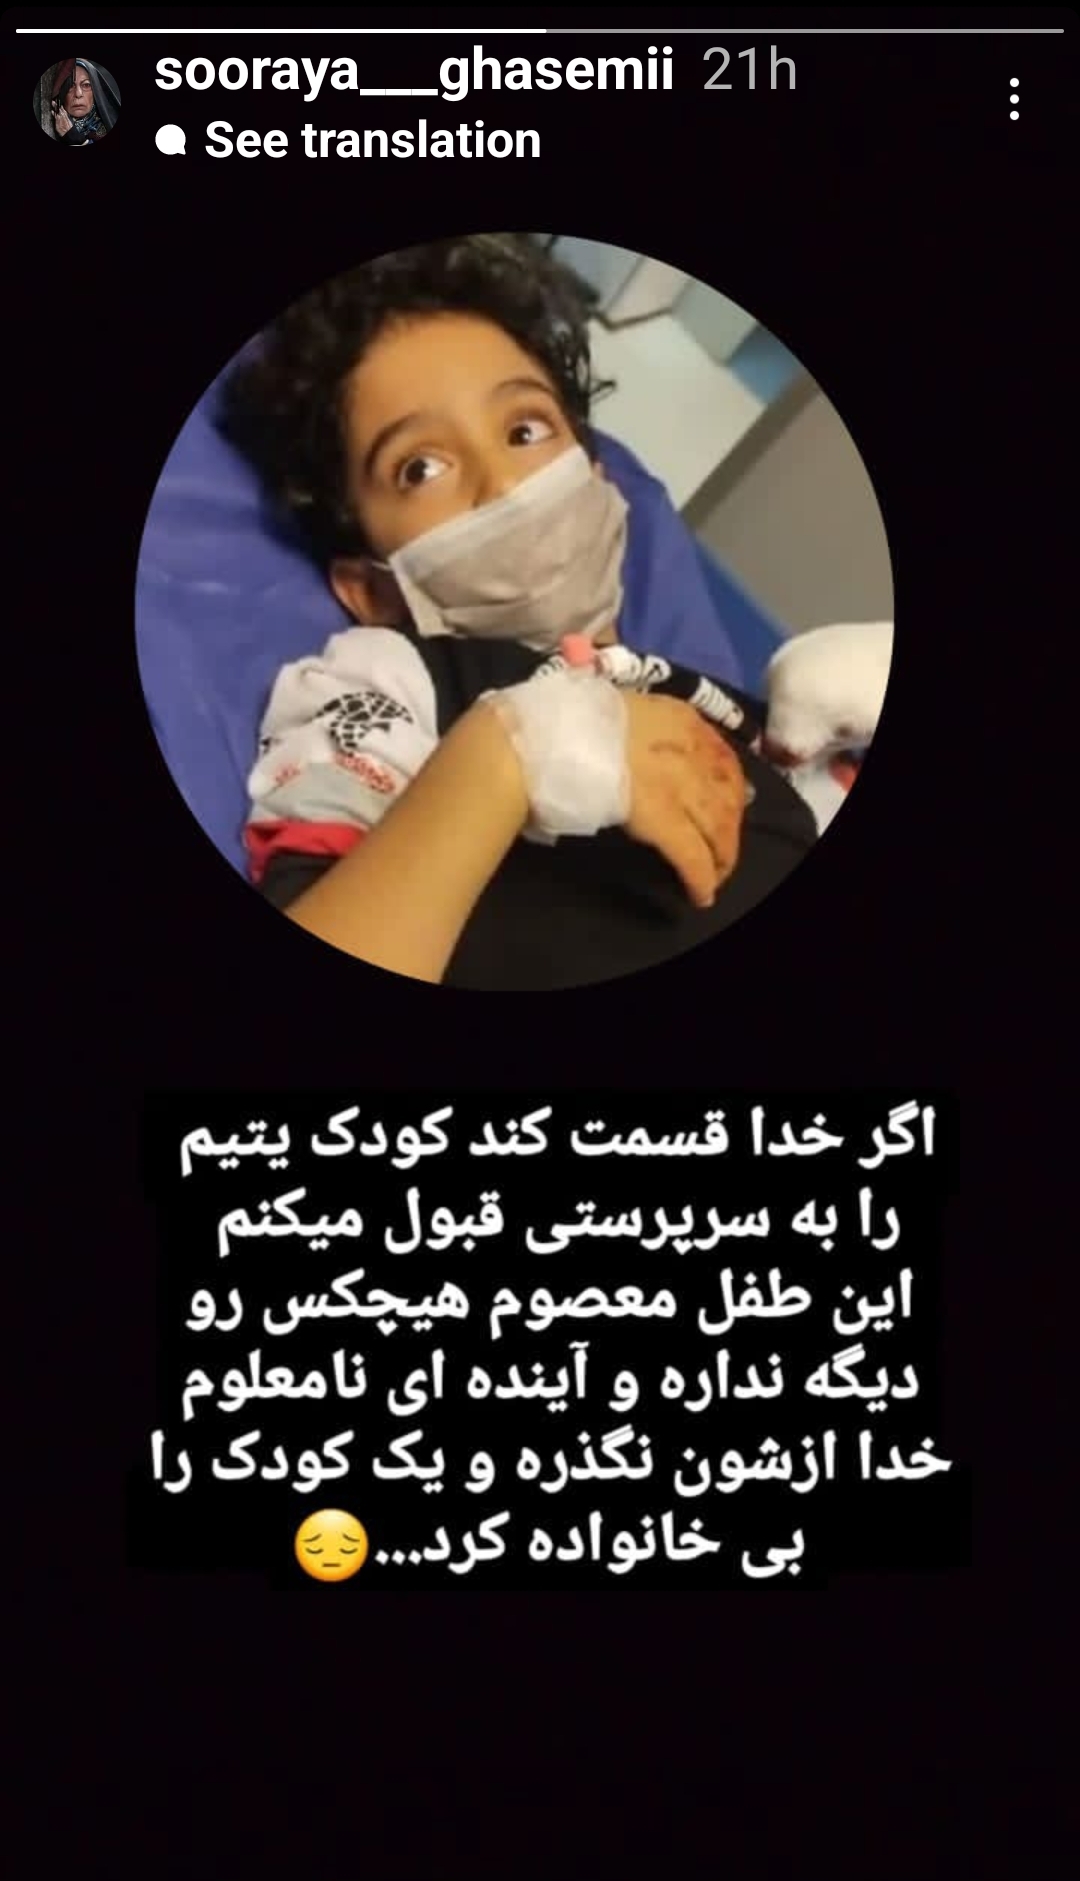 اقدام قابل ستایش بانوی سینمای ایران برای کودک یتیم حادثه شاهچراغ + عکس